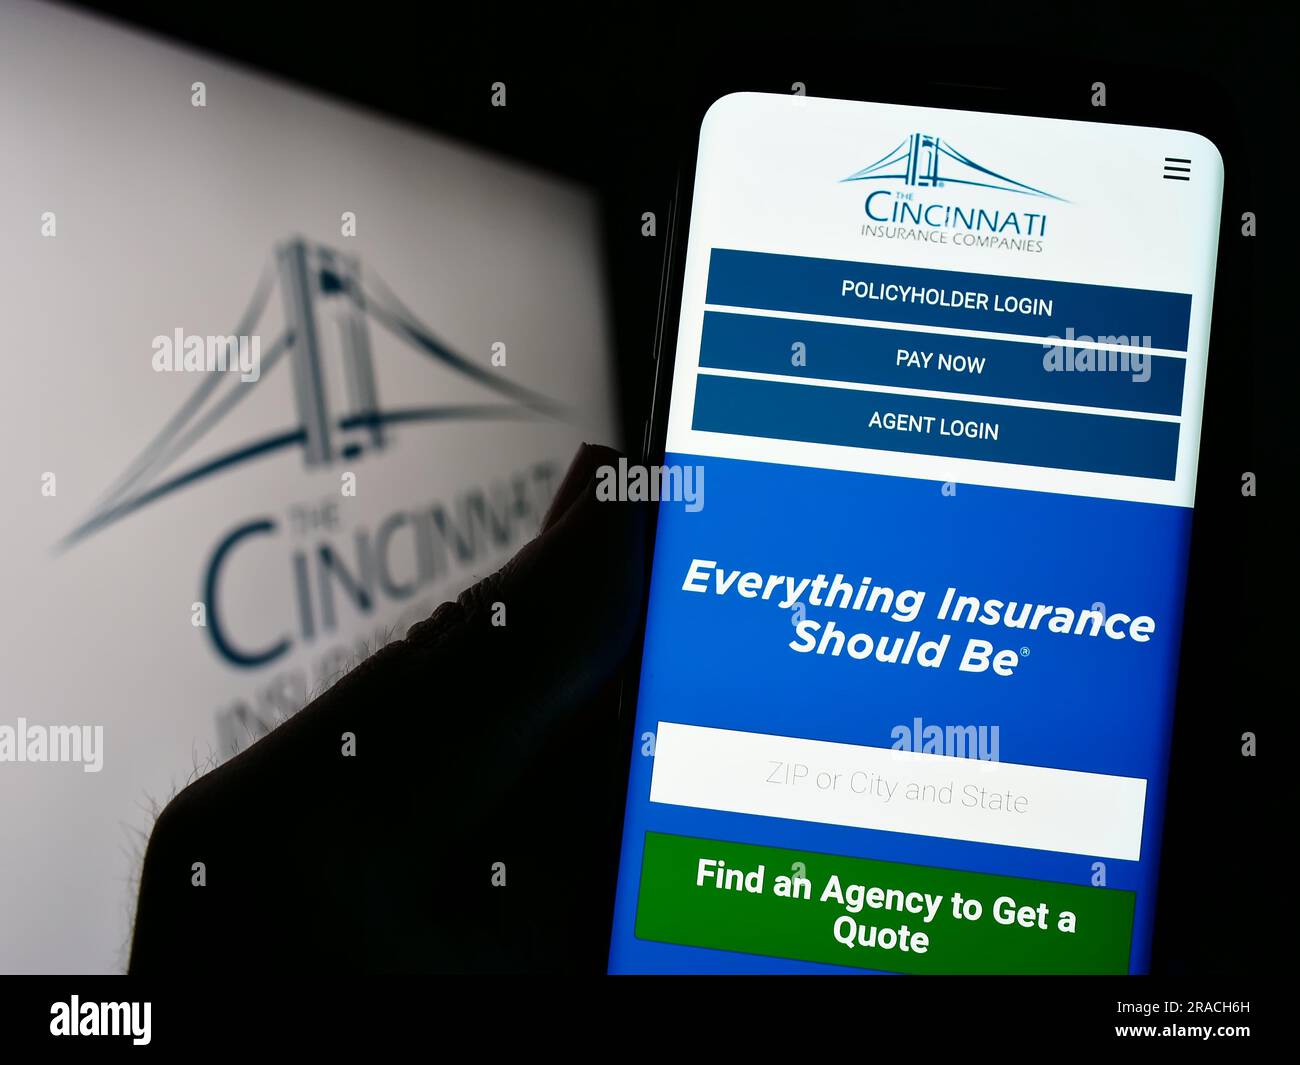 Persona che possiede uno smartphone con pagina Web della società statunitense Cincinnati Financial Corporation sullo schermo con logo. Concentrarsi sul centro del display del telefono. Foto Stock